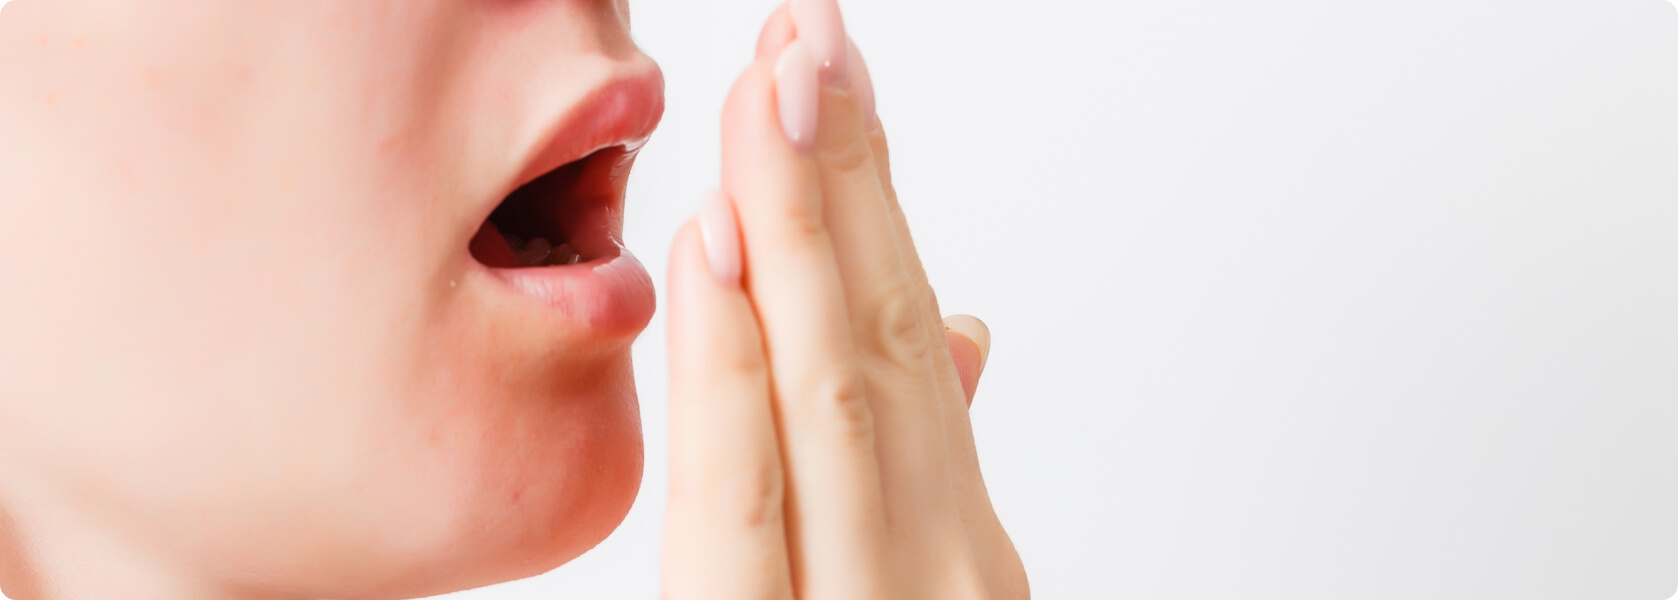 Mundgeruch (Halitosis) - Warum kann ich selbst meinen Mundgeruch nicht riechen?